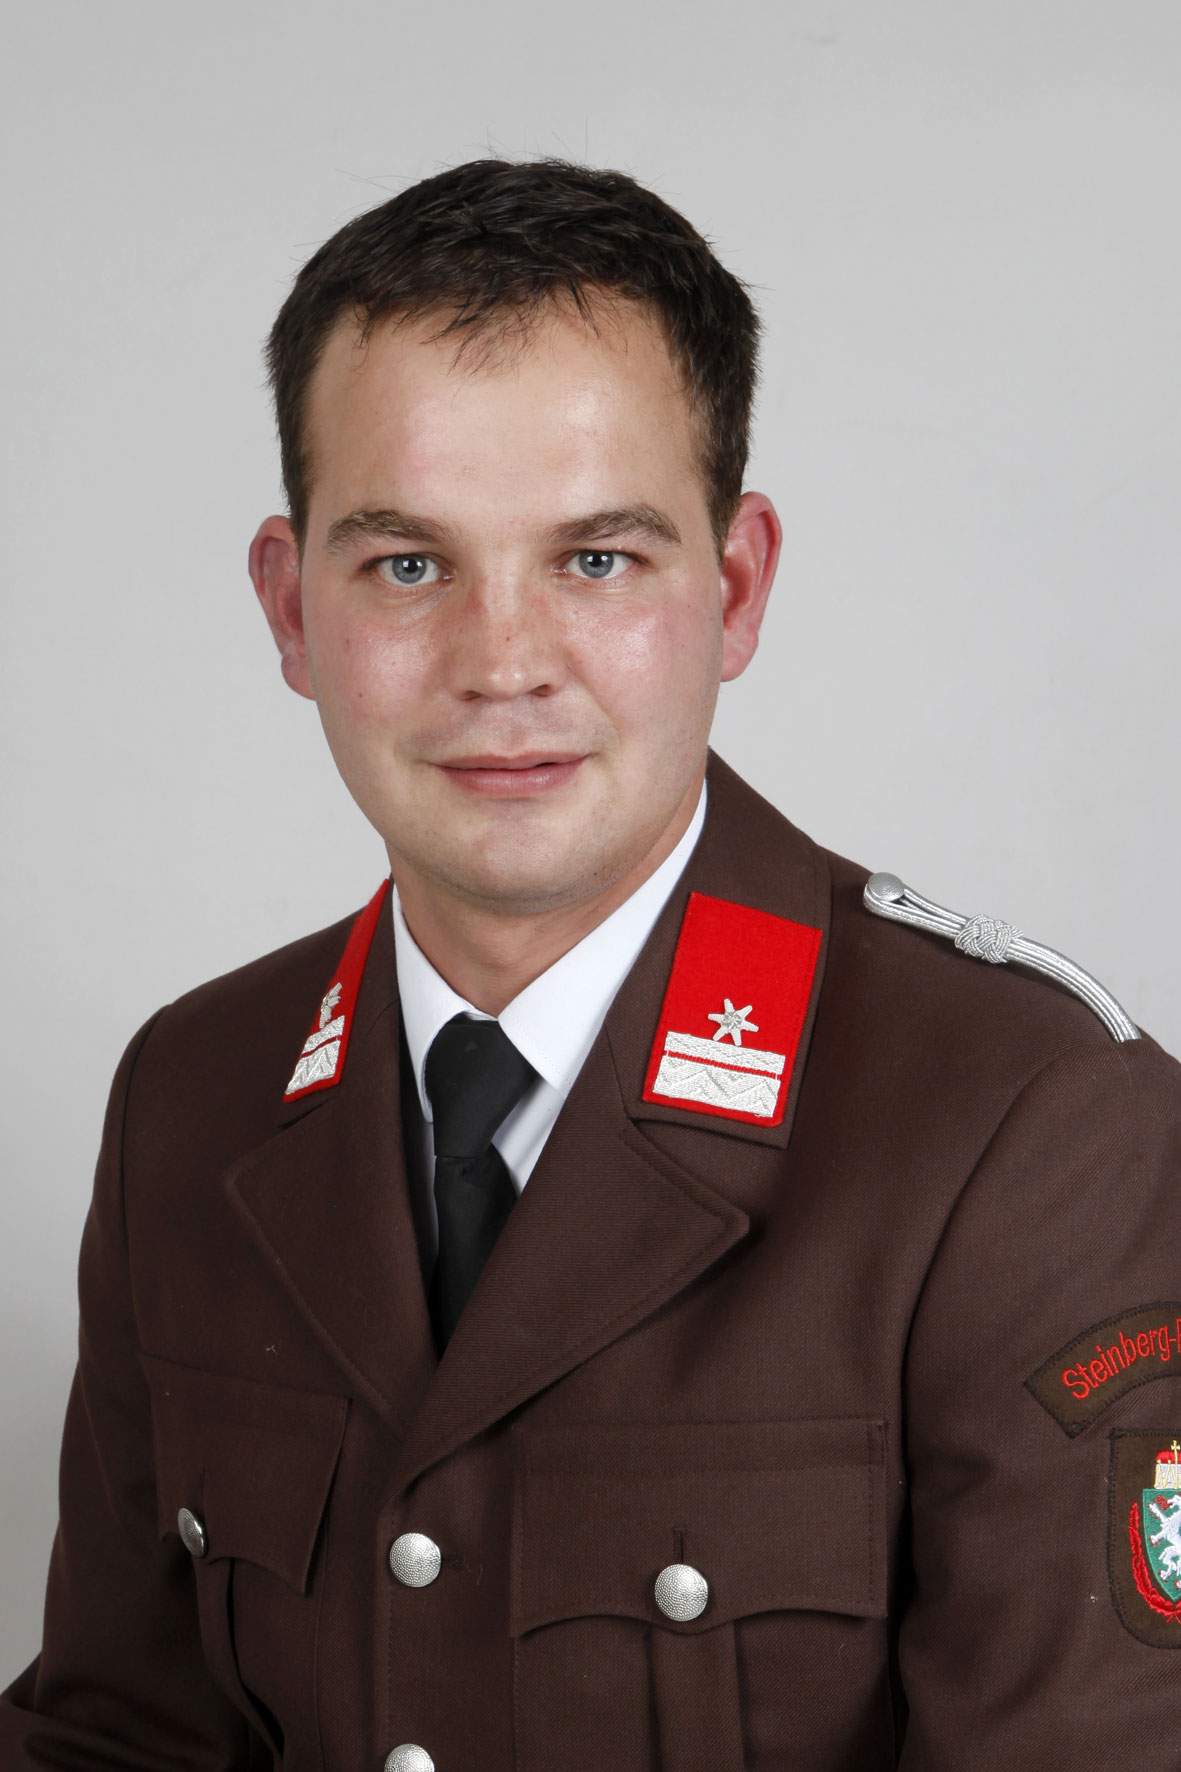 BM Perkonigg Sebastian Zugskommandant und Ausbildungsbeauftragter